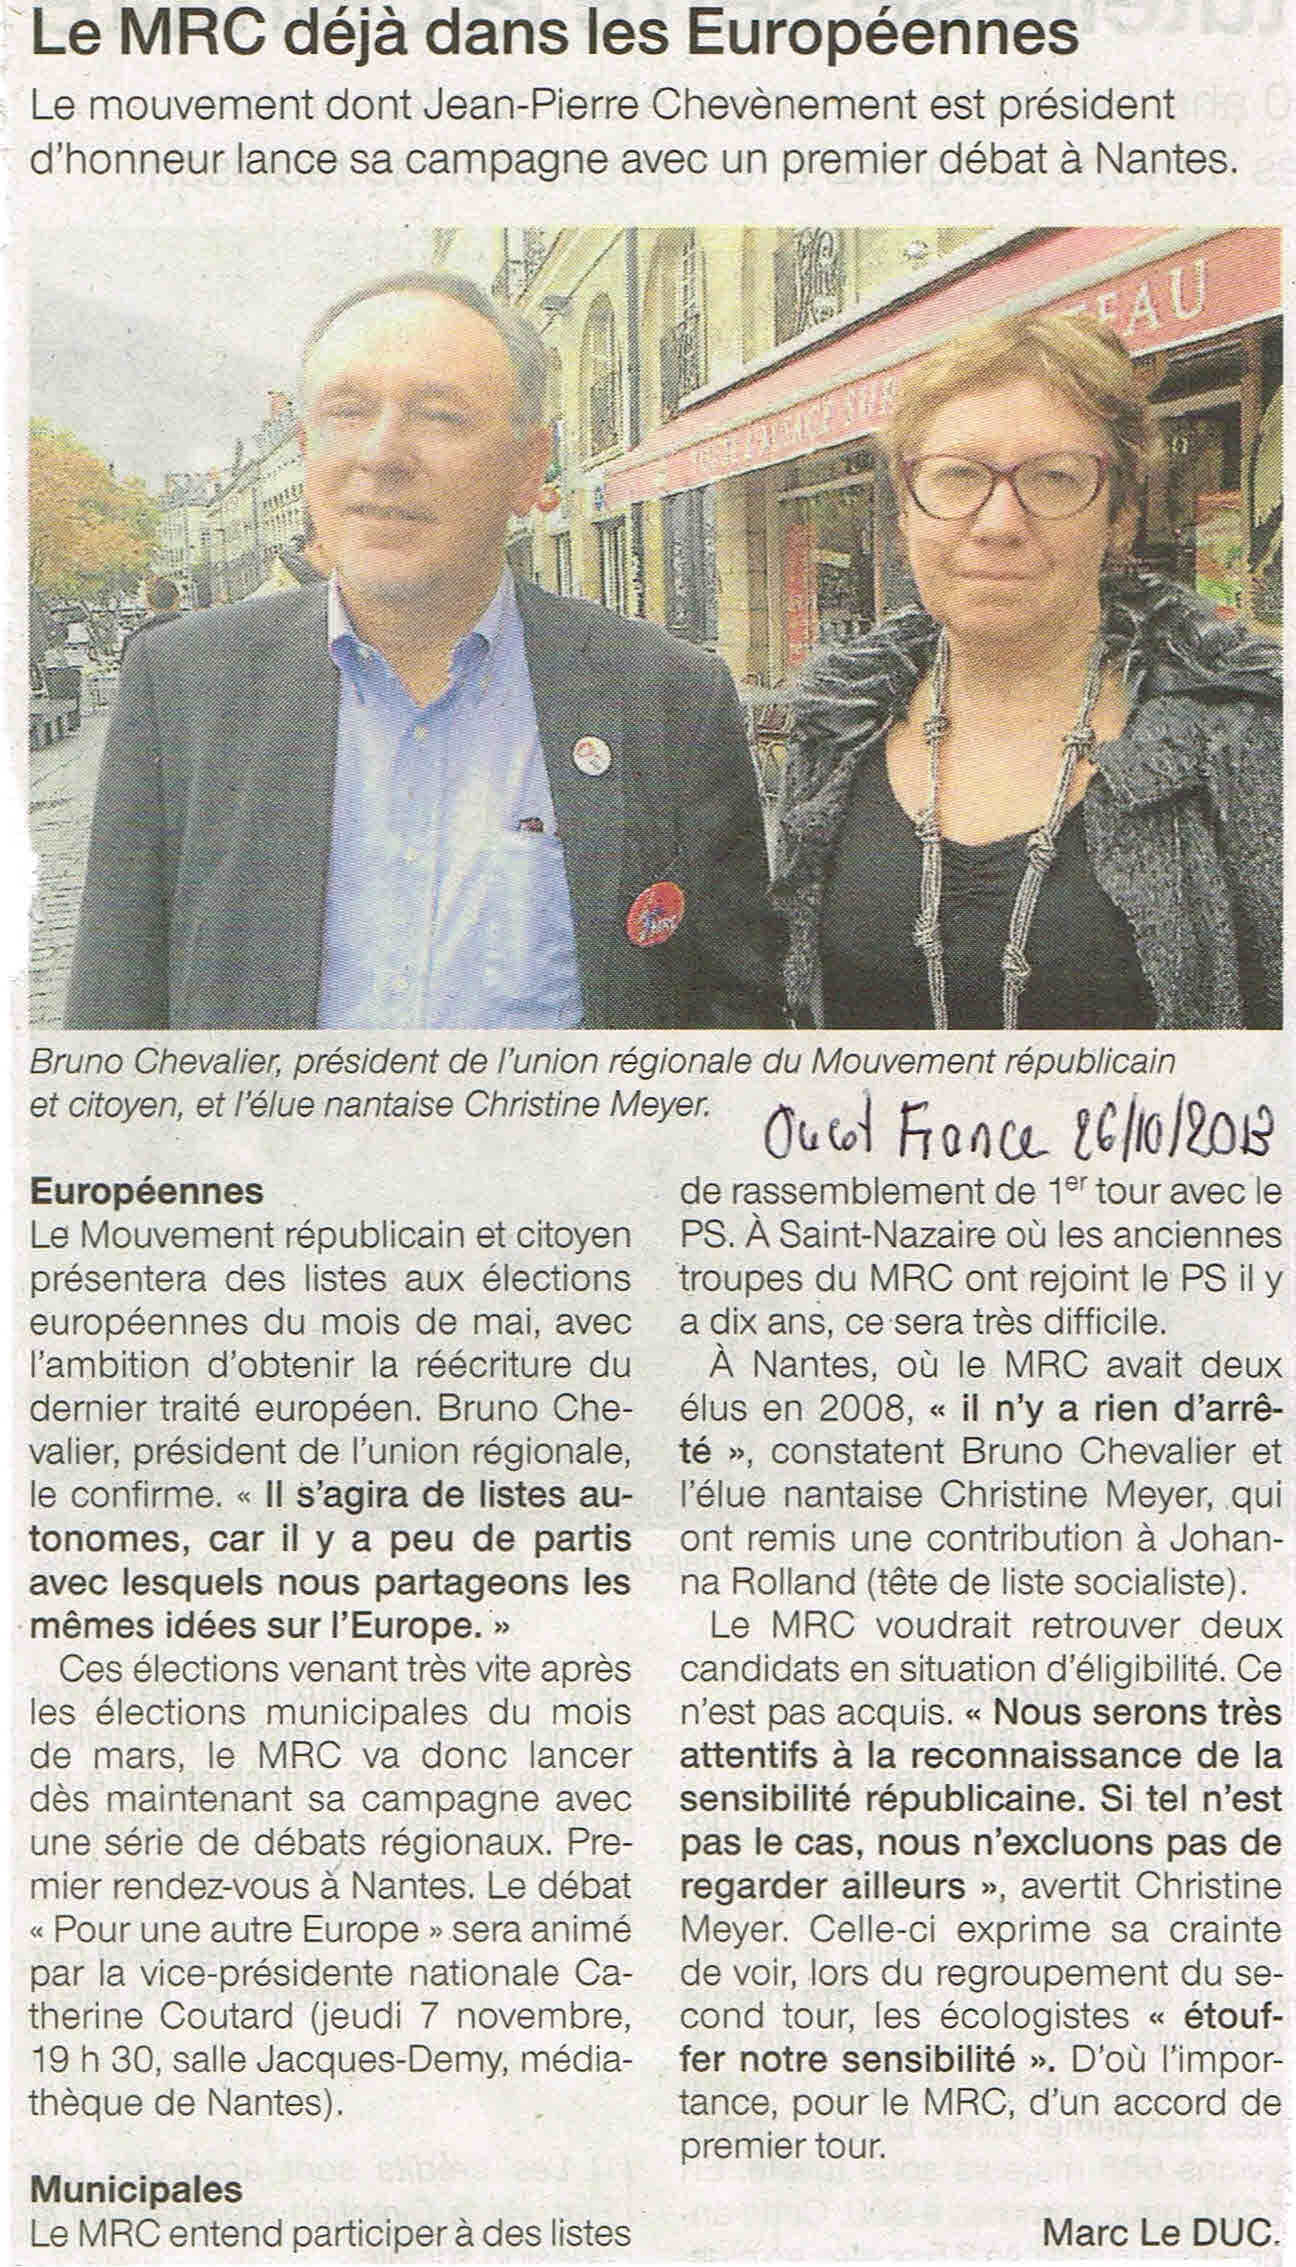 Le MRC déjà dans la Campagne des Européennes - Ouest France - 26.10.2013